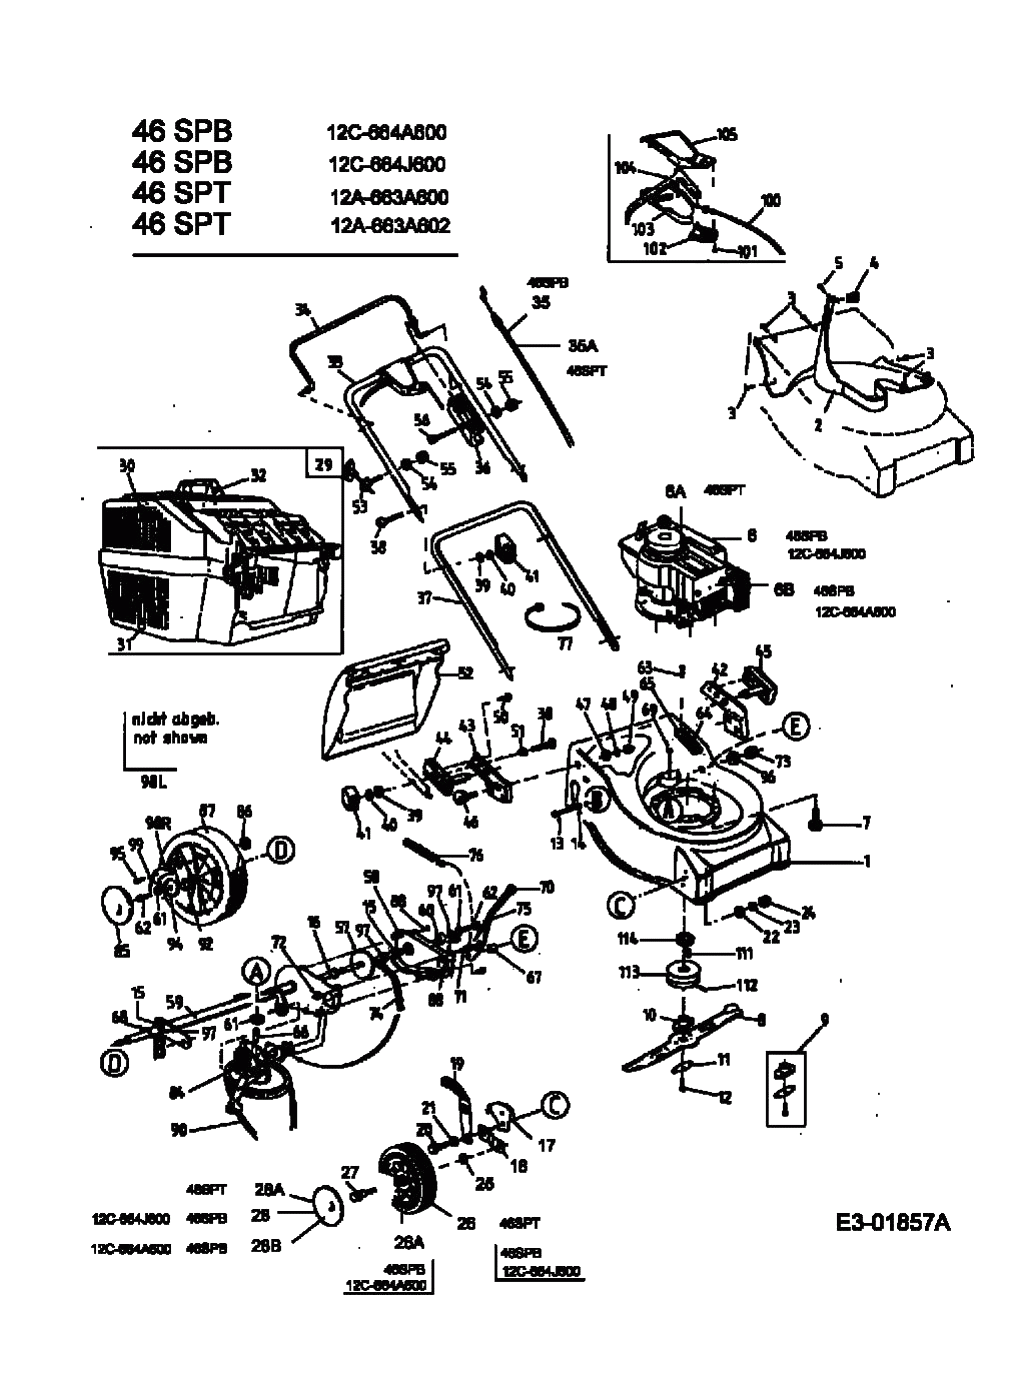 MTD Артикул 12C-664J600 (год выпуска 2003). Основная деталировка